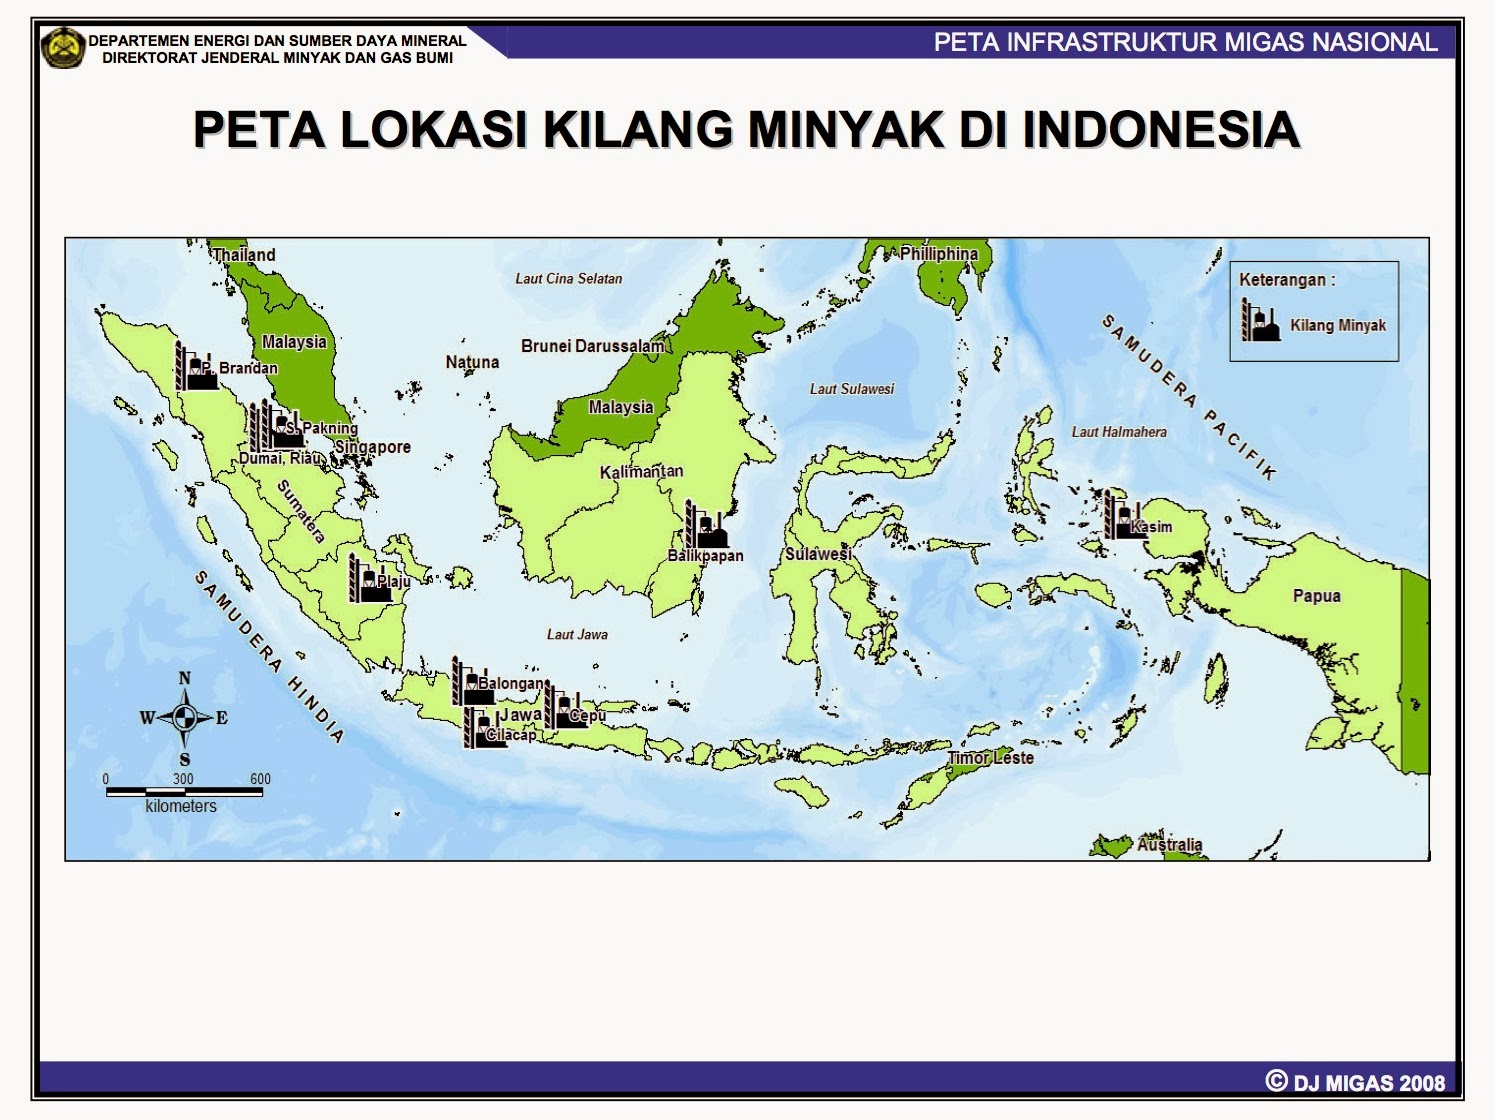 Kimia SMA DaerahDaerah Pengilangan Minyak Bumi dan Gas Bumi di Indonesia